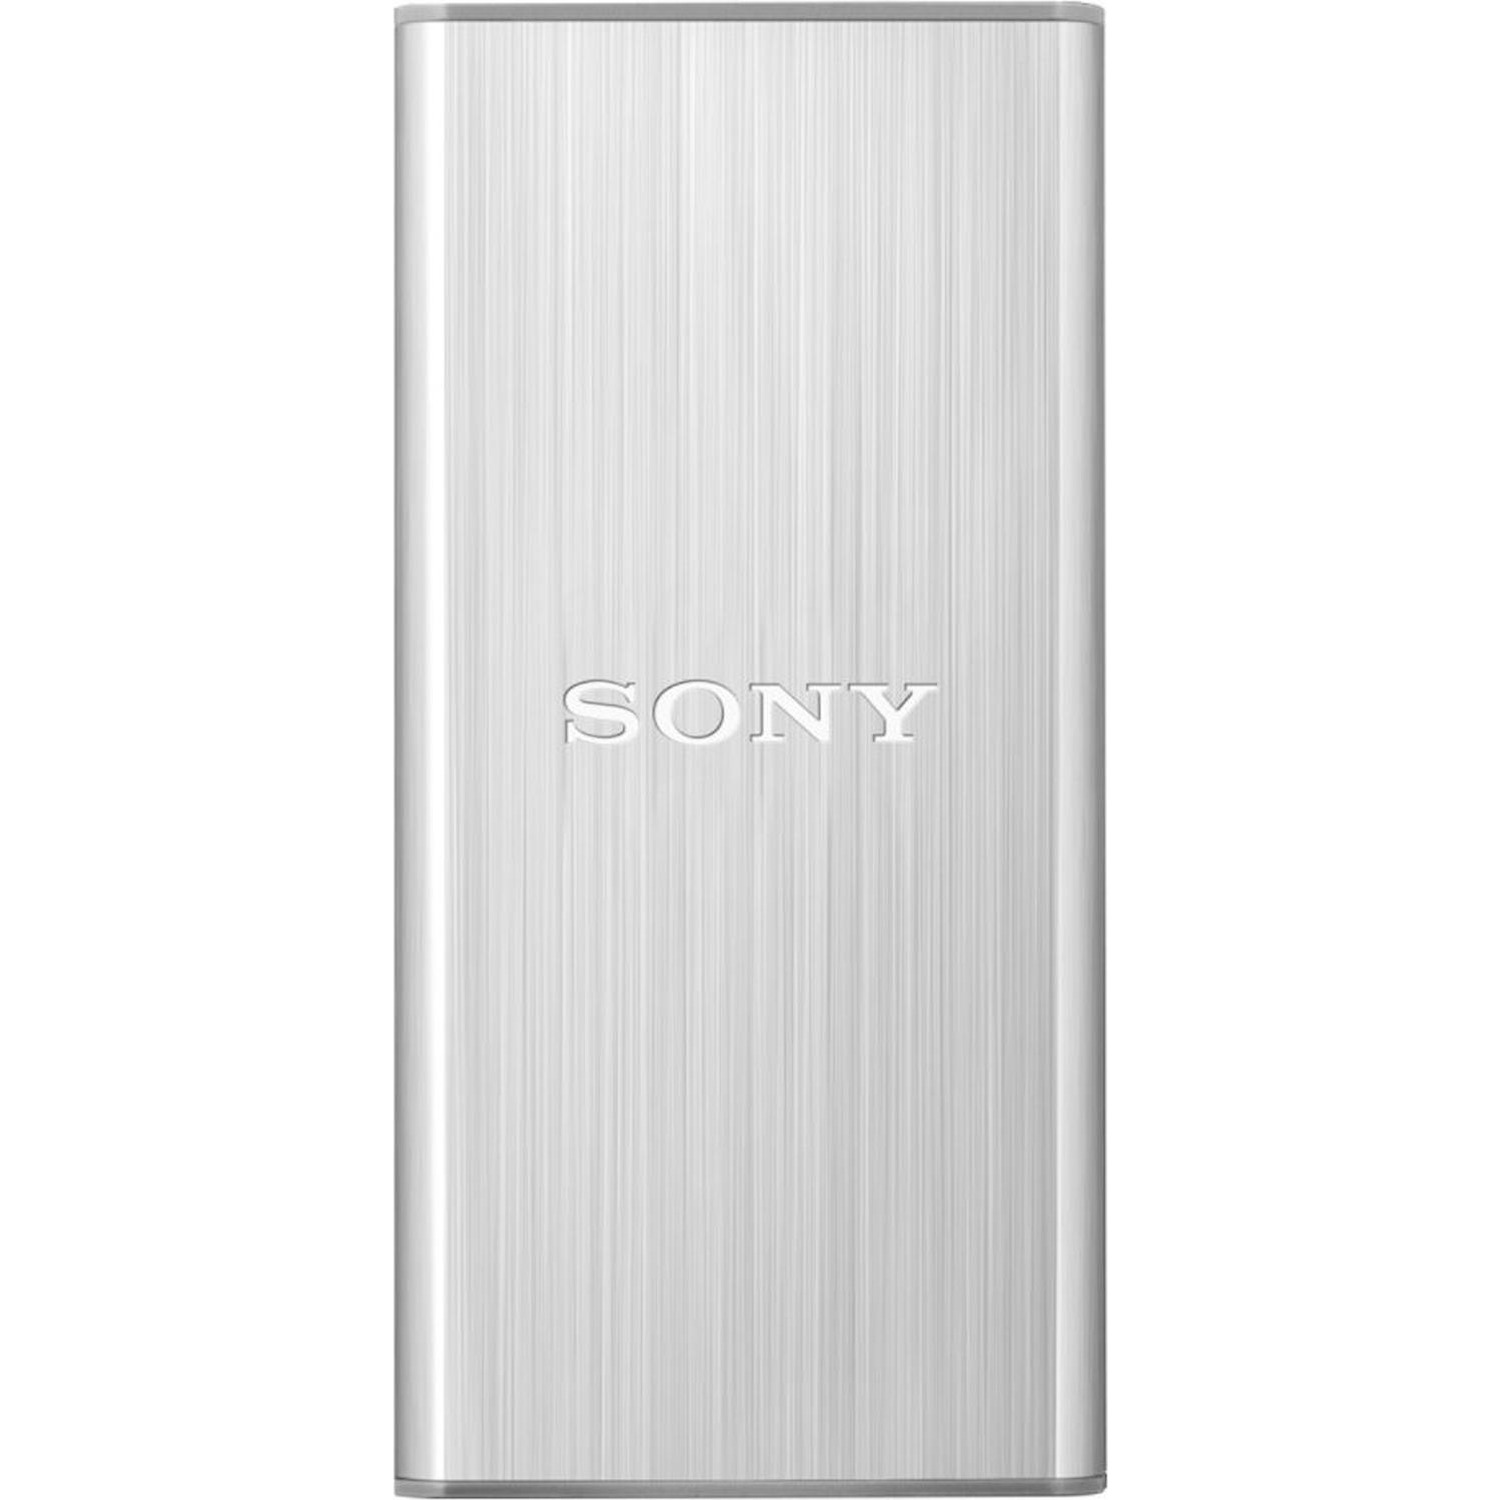 Immagine per HD SSD Sony 128GB esterno 3.0 silver da DIMOStore